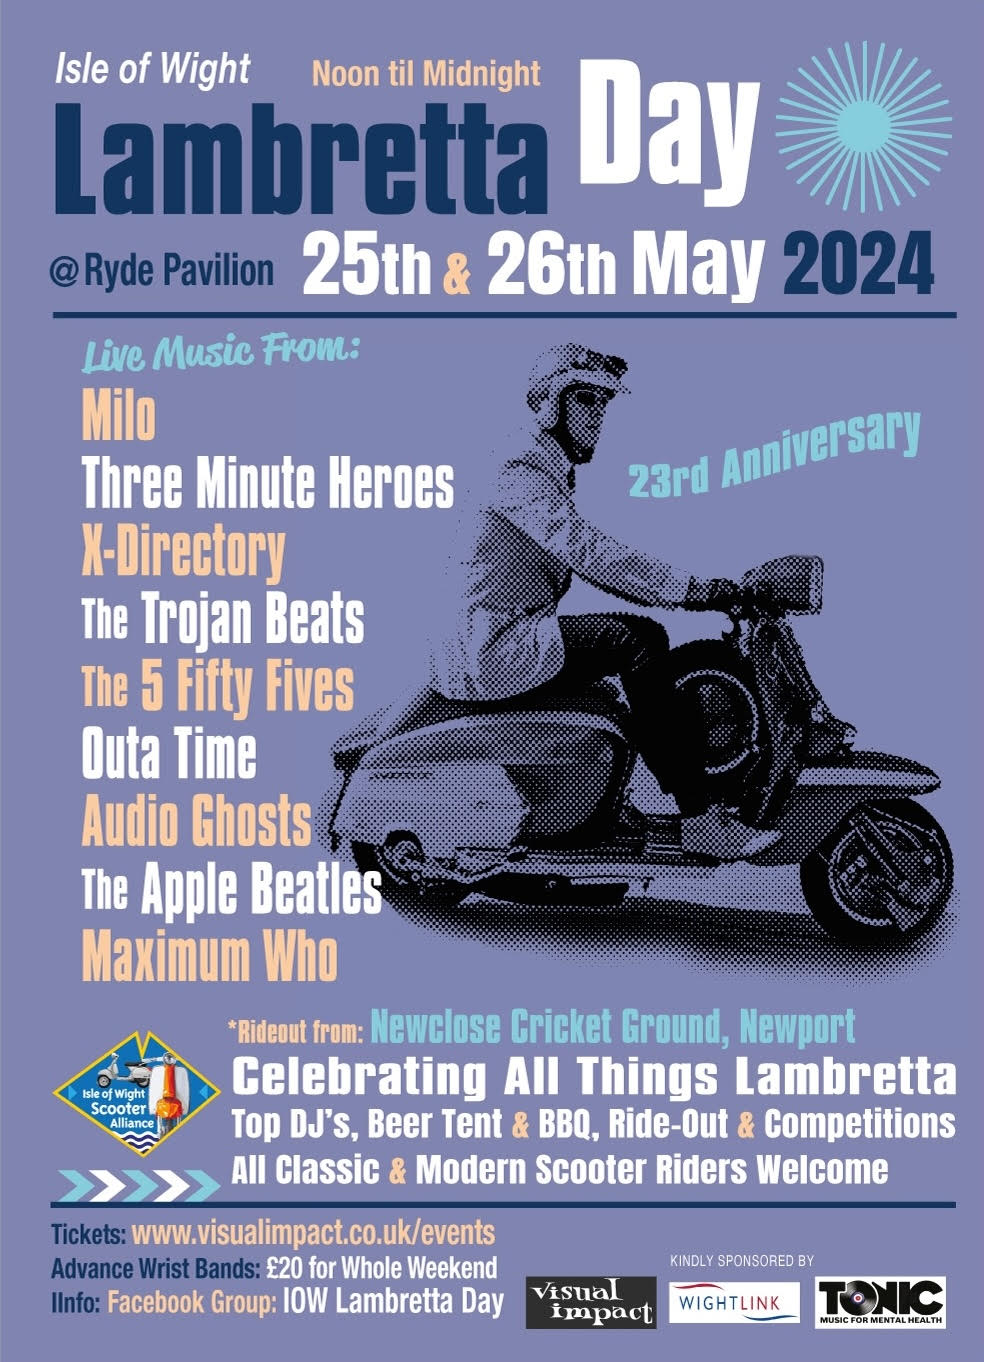 Isle of Wight Lambretta Day 2024 - 23rd Edition